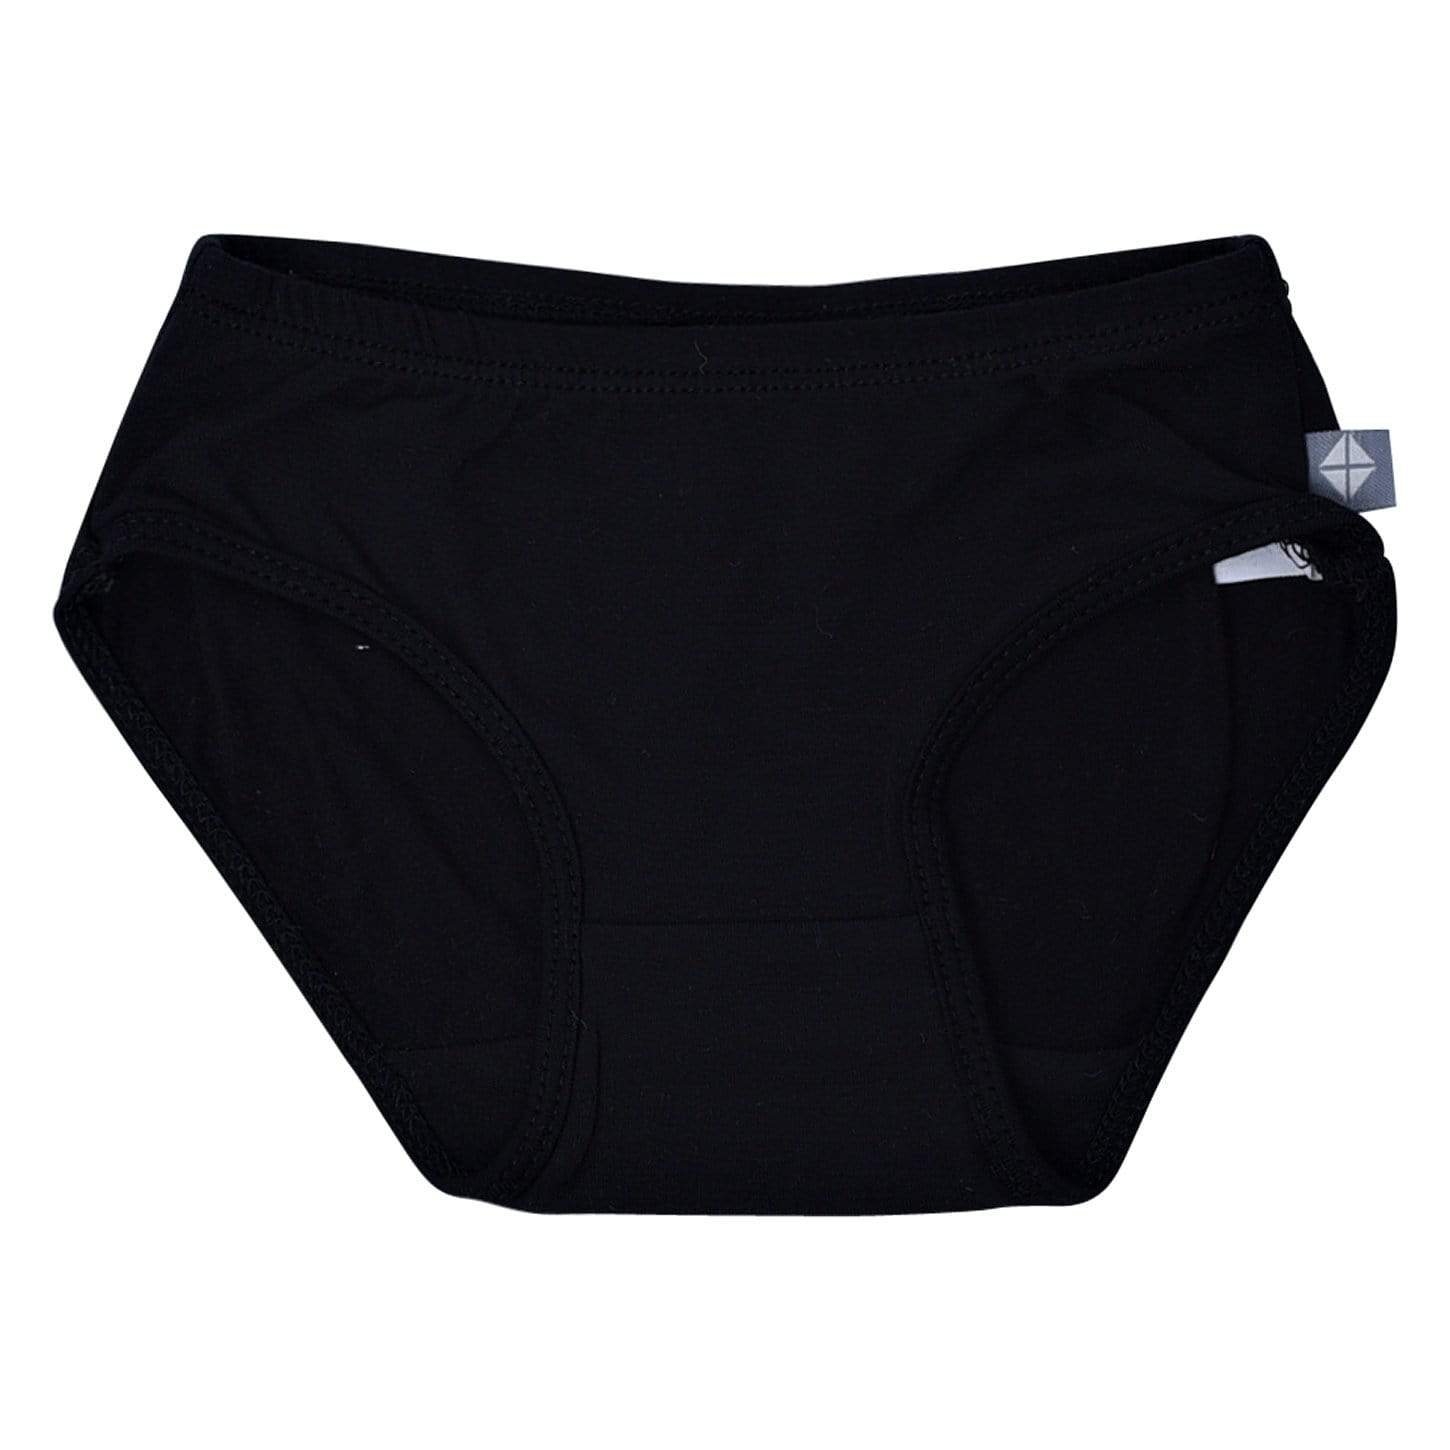 http://kytebaby.com/cdn/shop/products/kyte-baby-underwear-midnight-2t-undies-in-midnight-30008955469935.jpg?v=1628235297